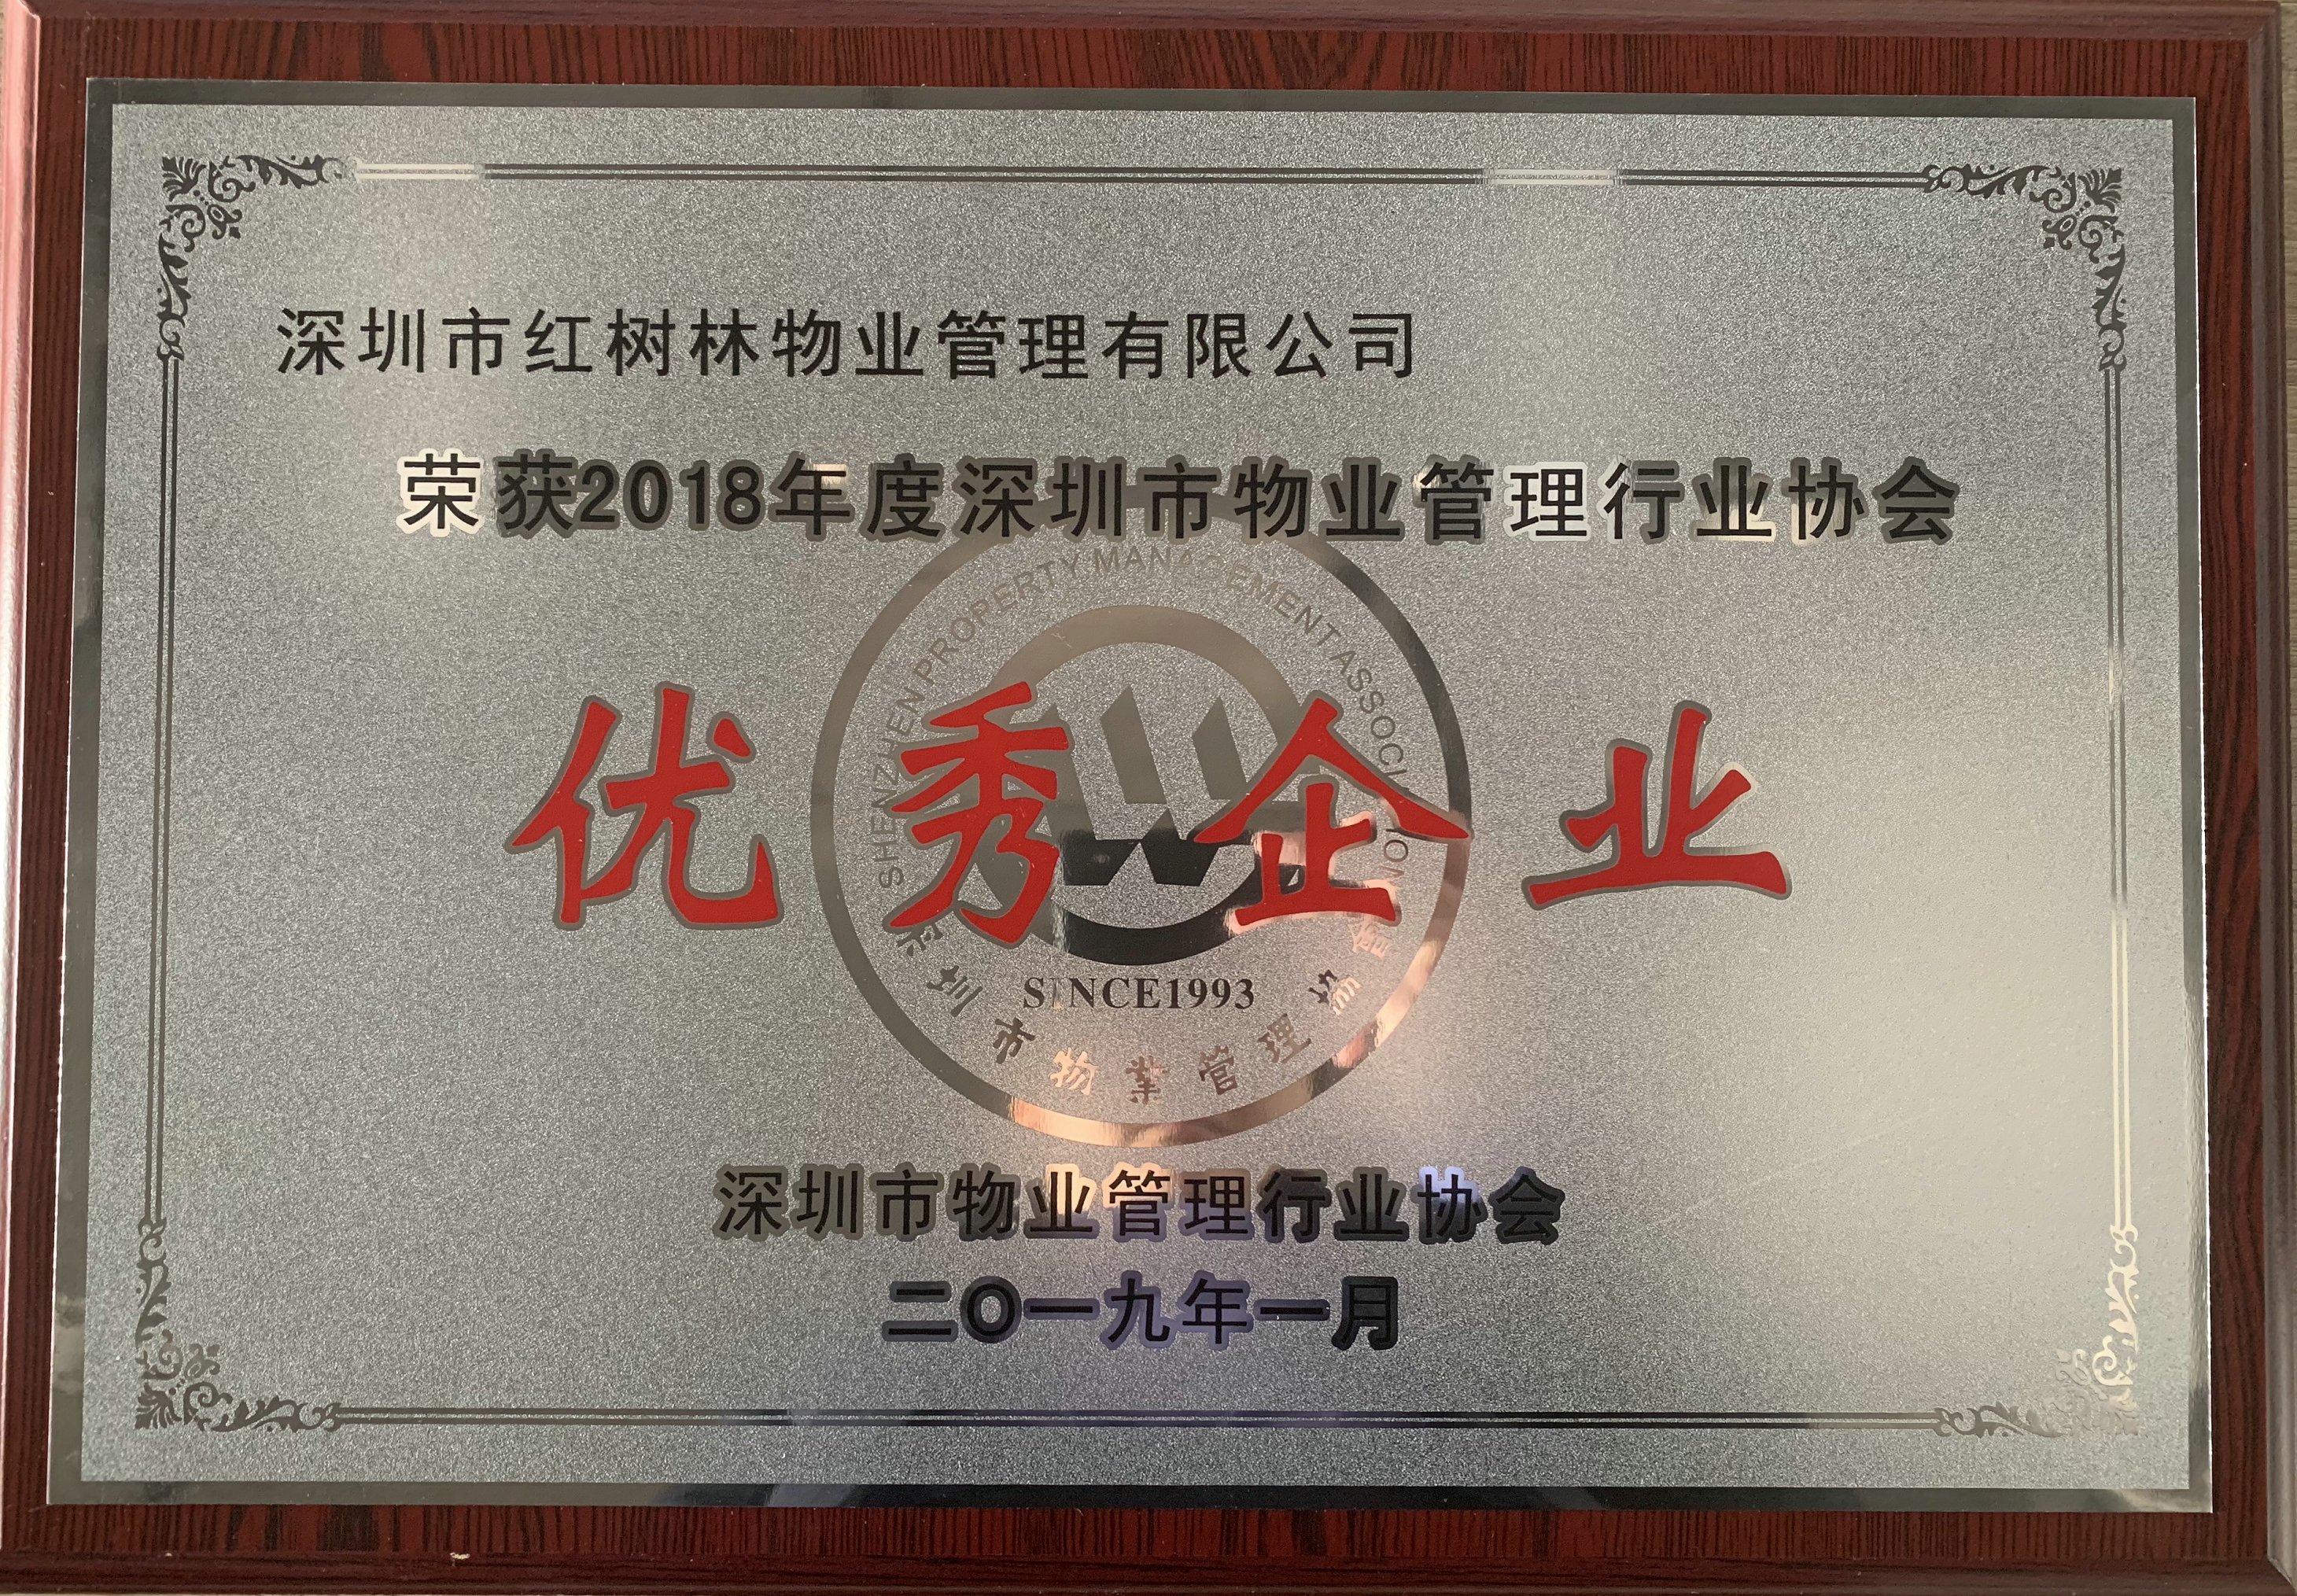 热烈庆祝红树林物业获评“2018年度深圳市物业管理行业协会优秀企业”